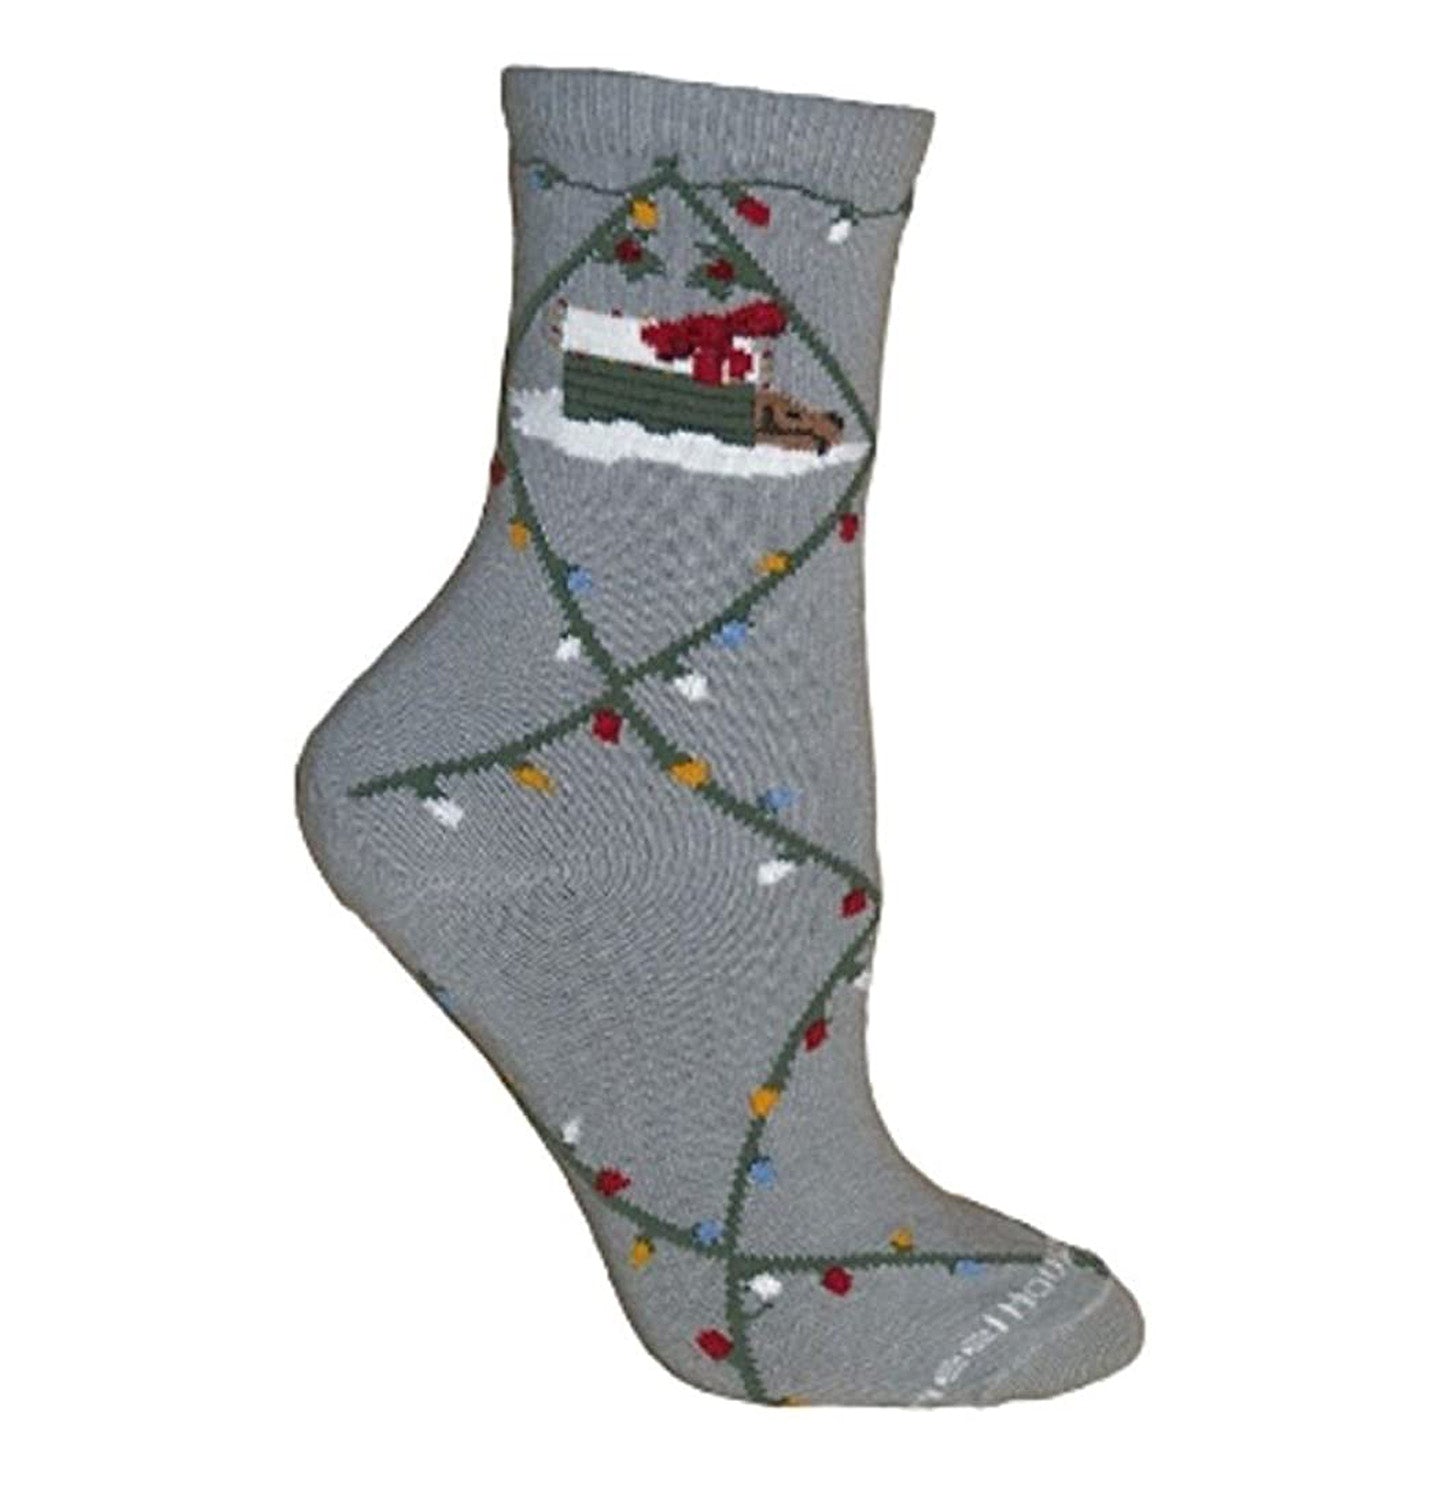 Animal Pride - Dog and Christmas Lights on Grey - Adult Cotton Crew Socks